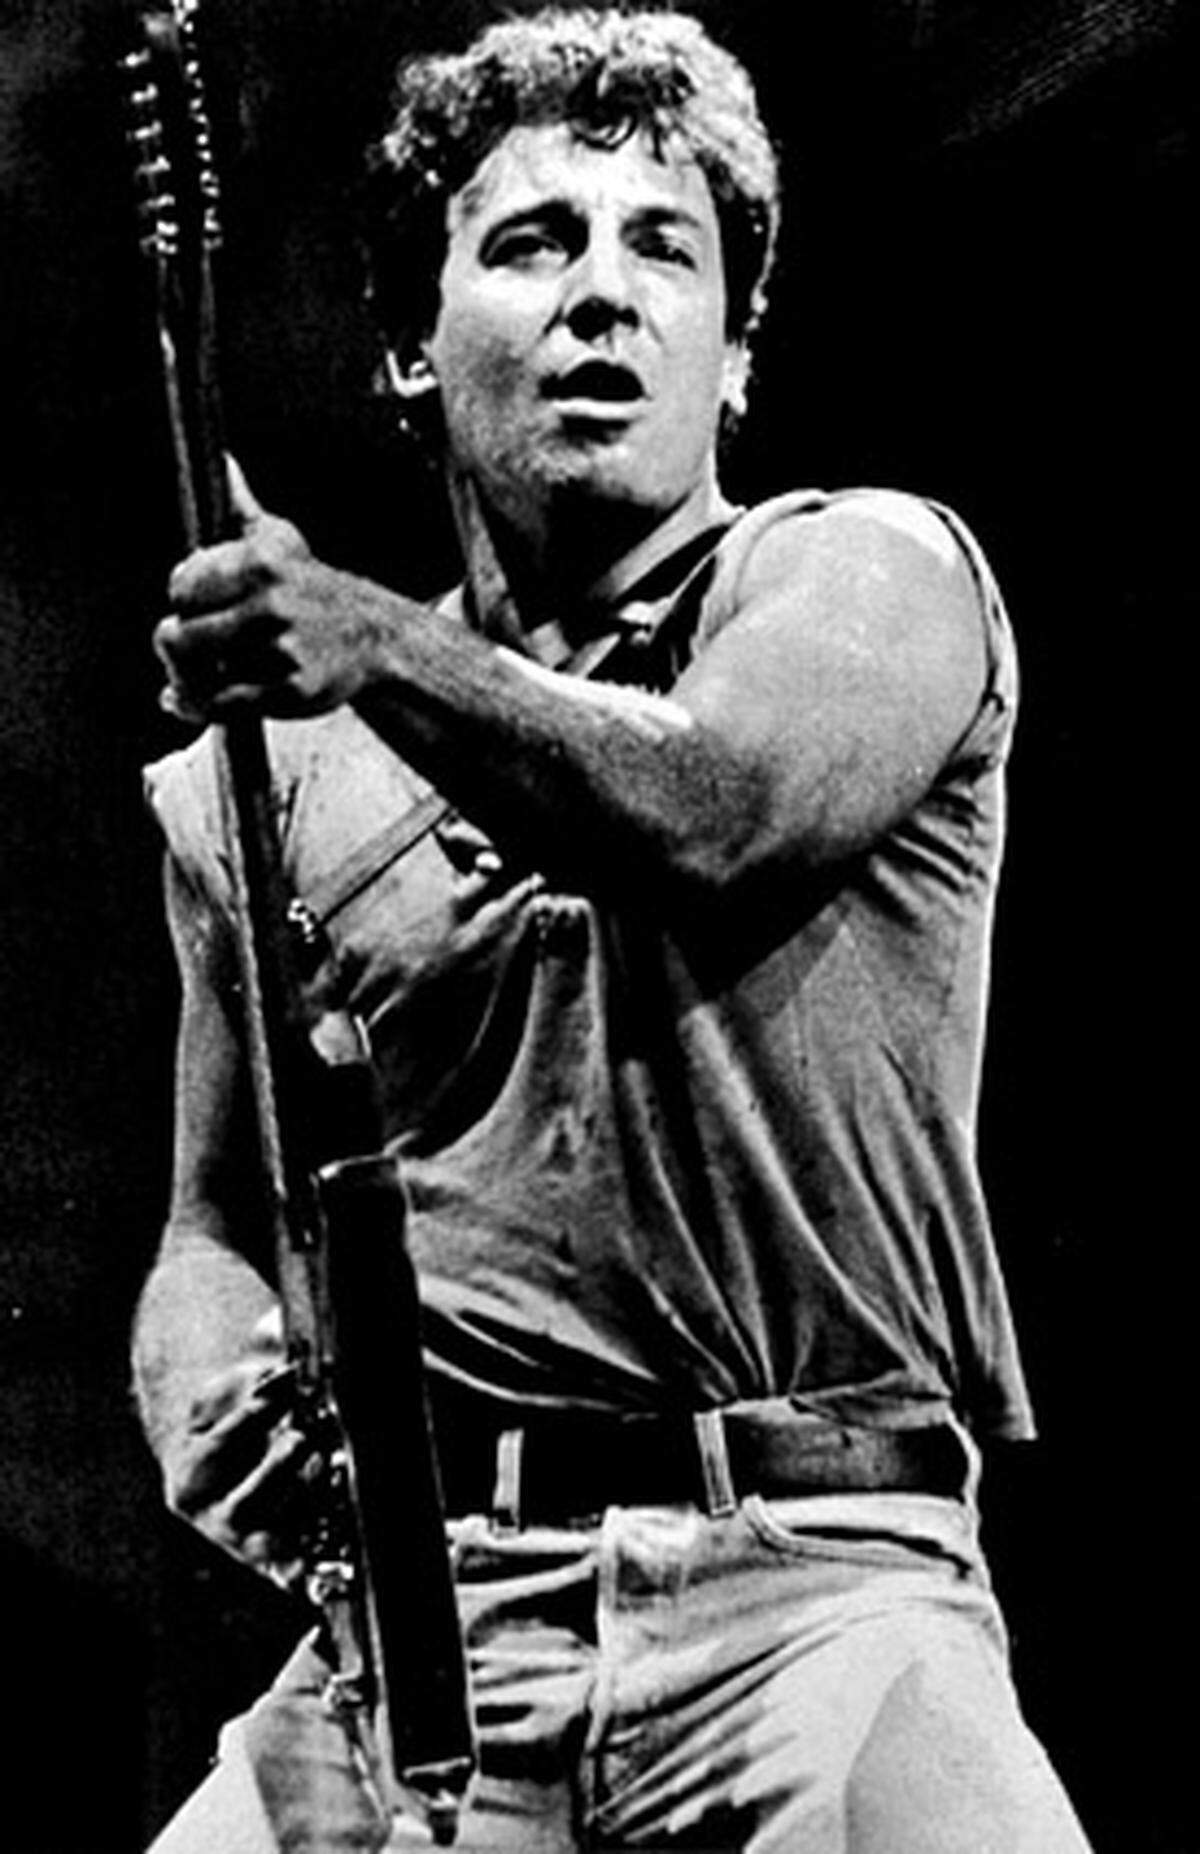 Mit seinem dritten, aufwändig produzierten Album "Born to Run" gelingt Springsteen 1975 schließlich der Durchbruch. Er ziert die Titelseiten bekannter Magazine und wird schnell zum Star hochstilisiert - was vom Publikum, Musikerkollegen und Kritikern teils skeptisch betrachtet wird. Für viele scheint Springsteen nicht mehr als ein Medienhype zu sein.